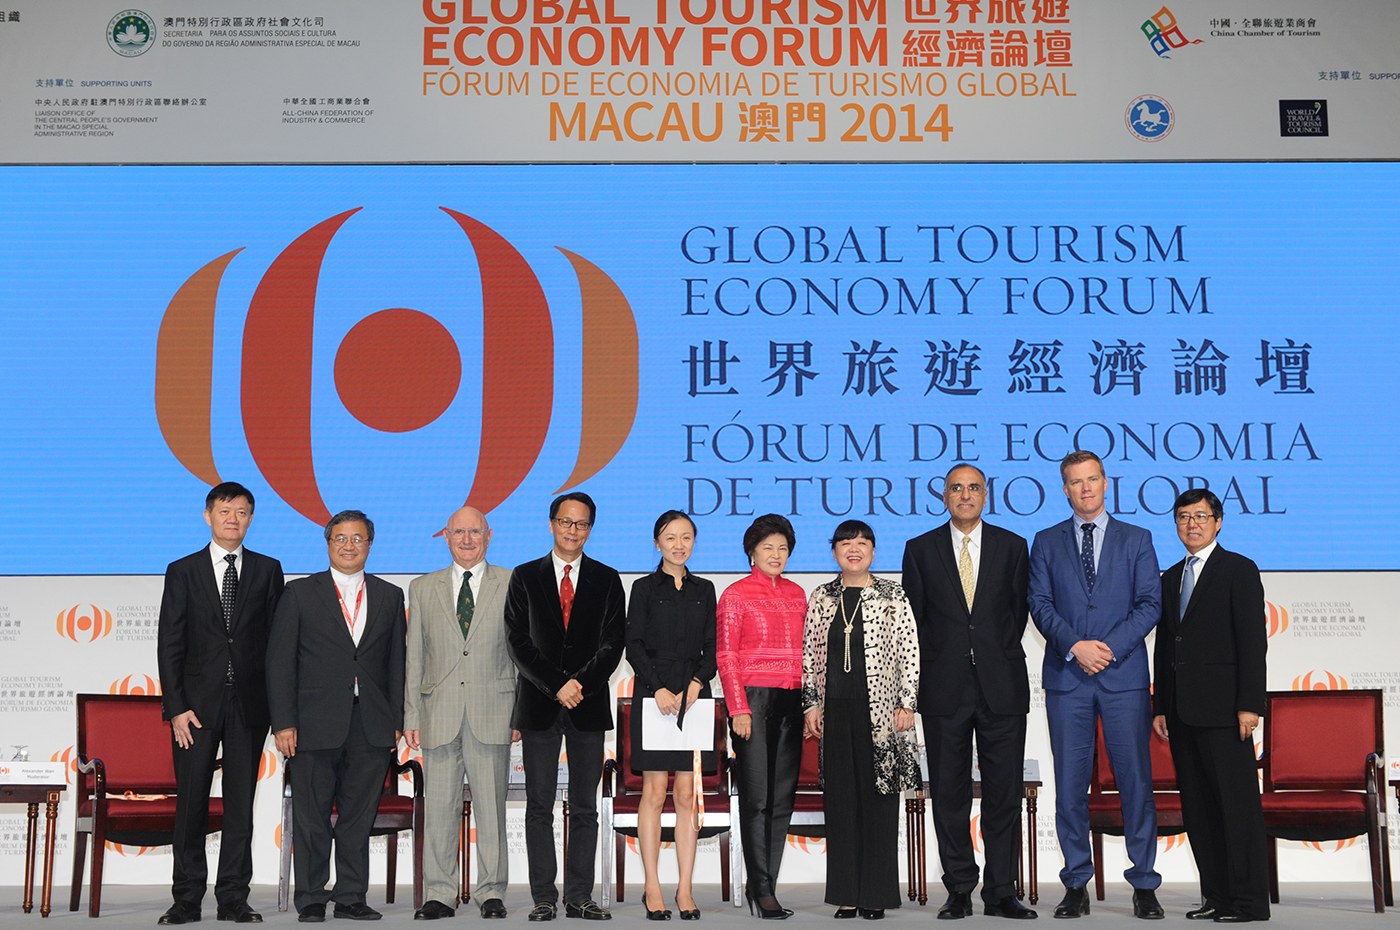 Global Tourism Economy Forum; Macau